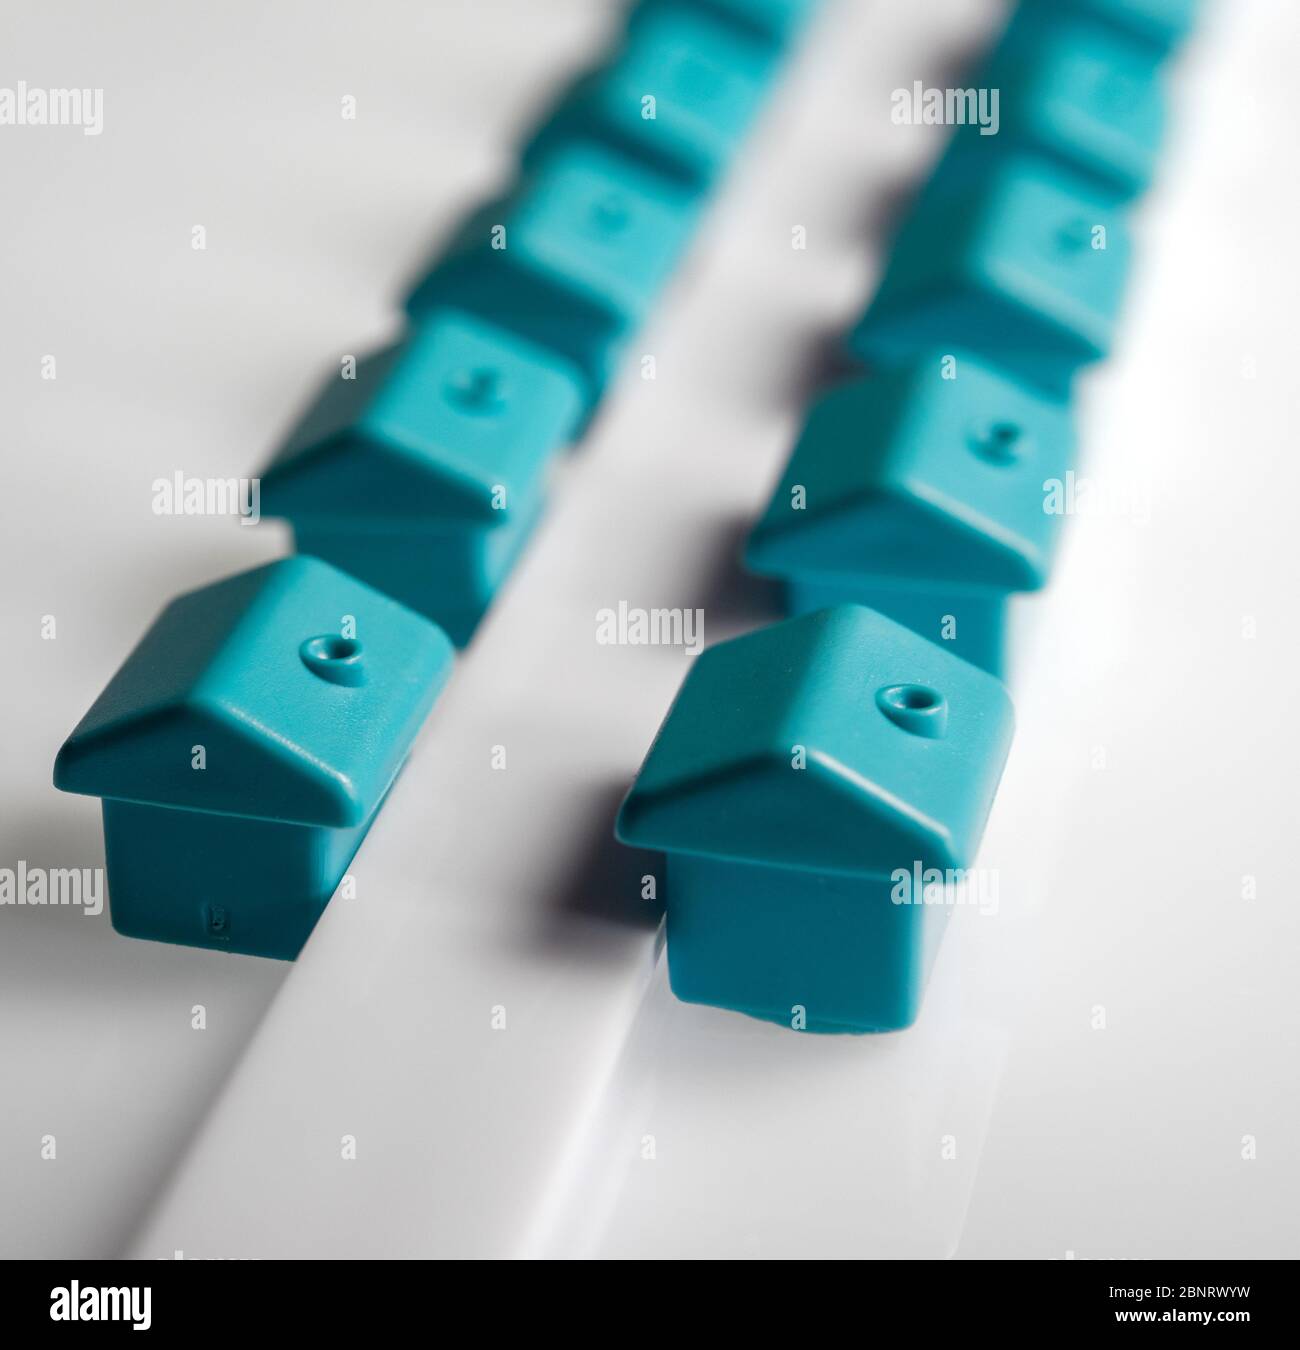 Wohnungsmarkt Konzept, kleine blaue Häuser auf weißem Hintergrund Stockfoto